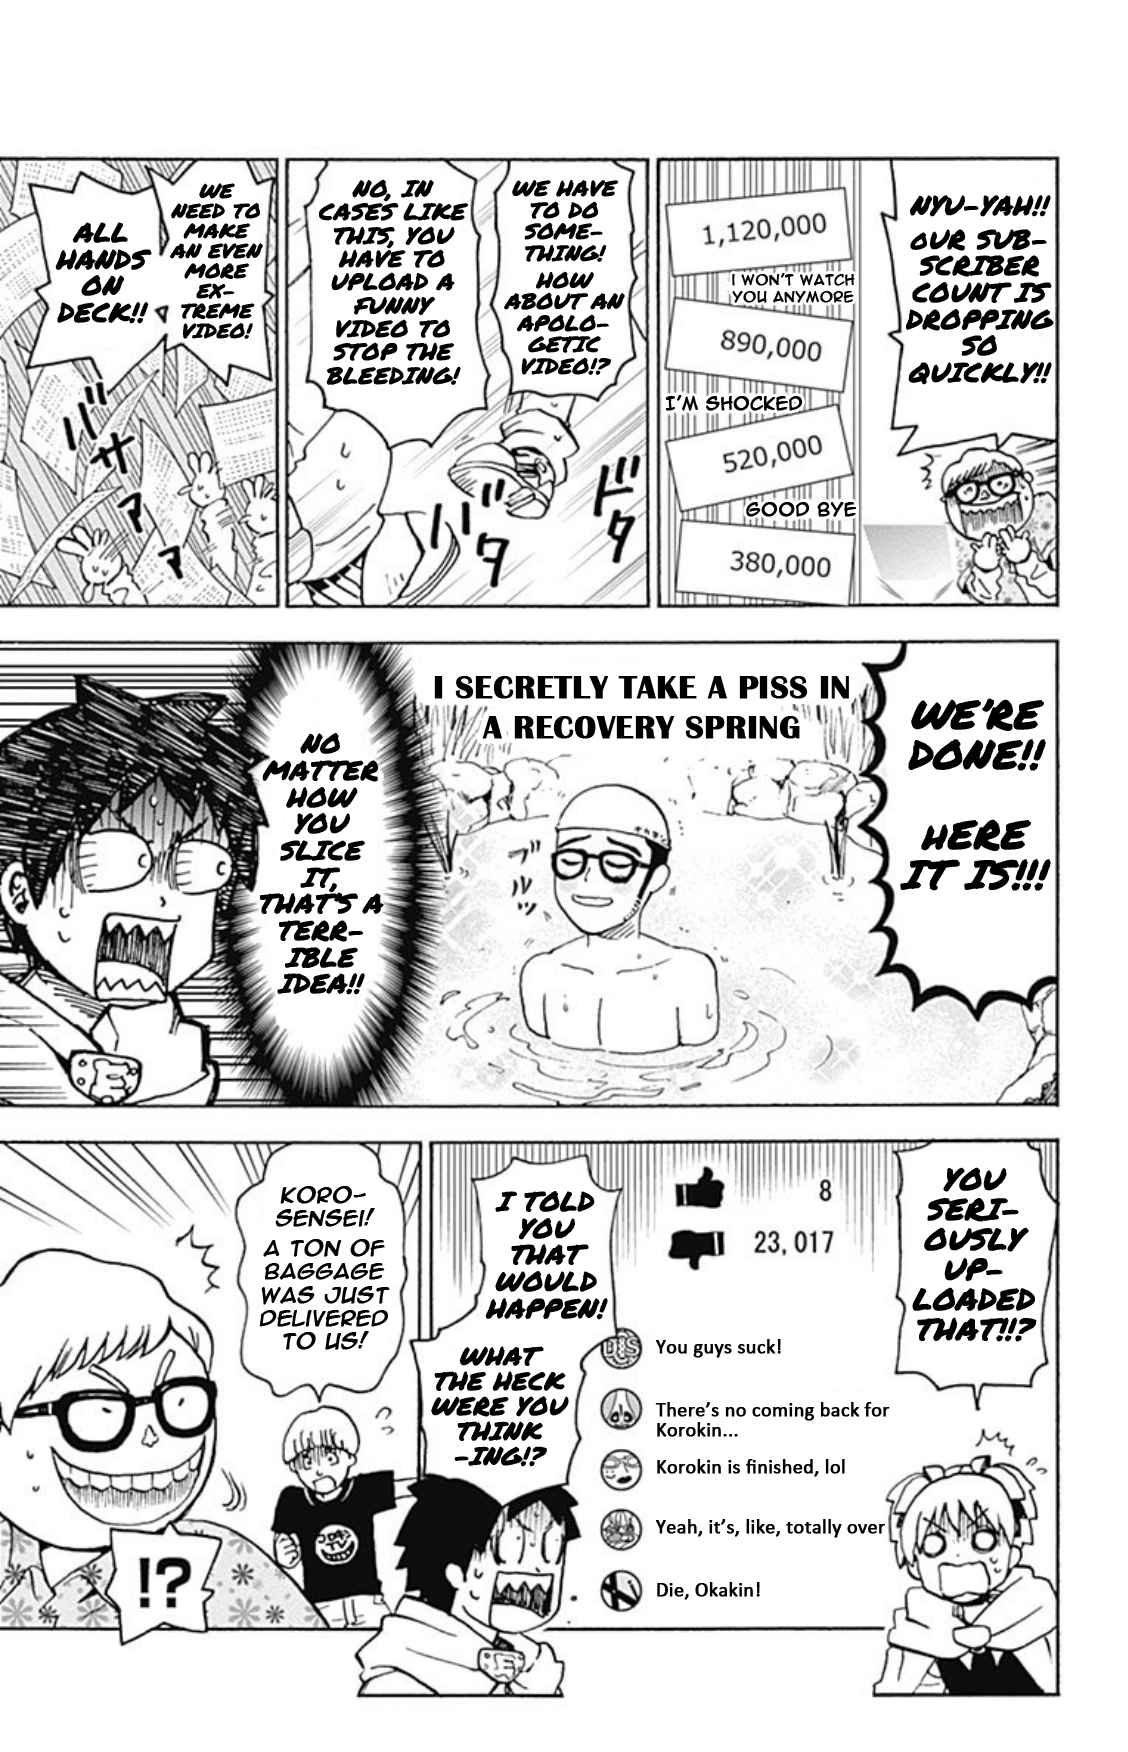 Korosensei Quest! Vol. 4 Ch. 21 Class E & YuuTube